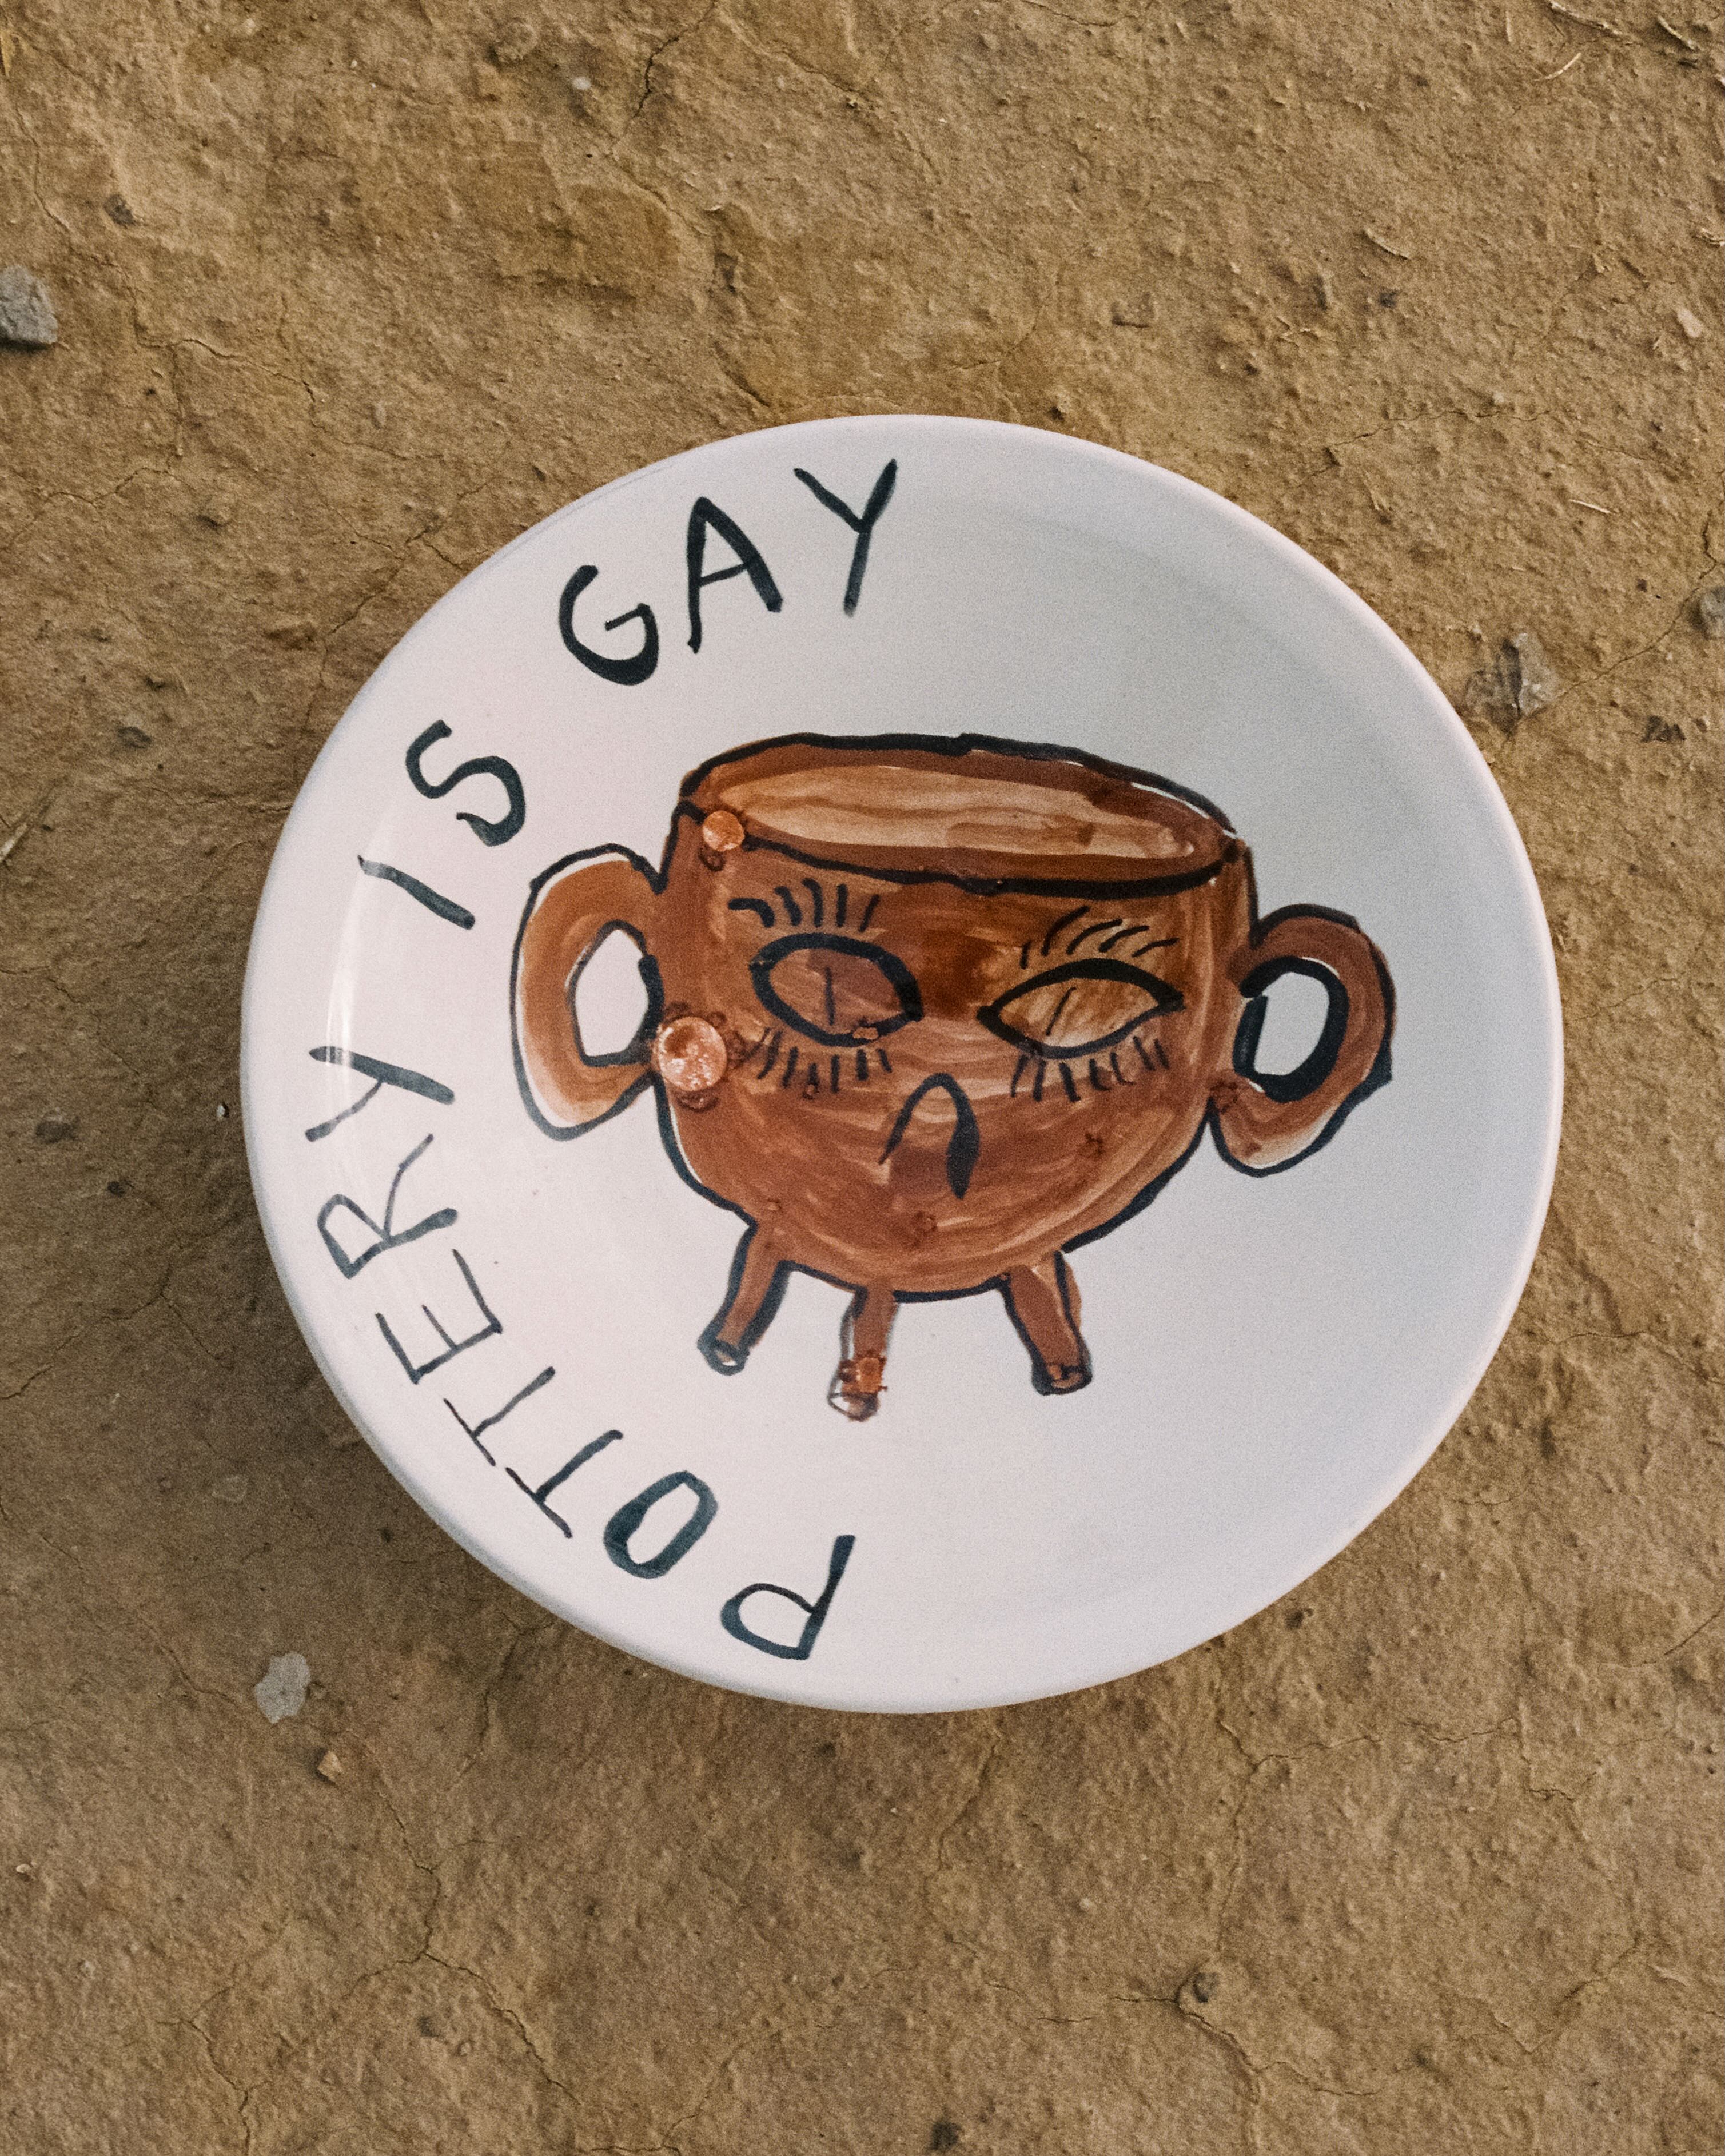 Fuente grande "Pottery is gay"